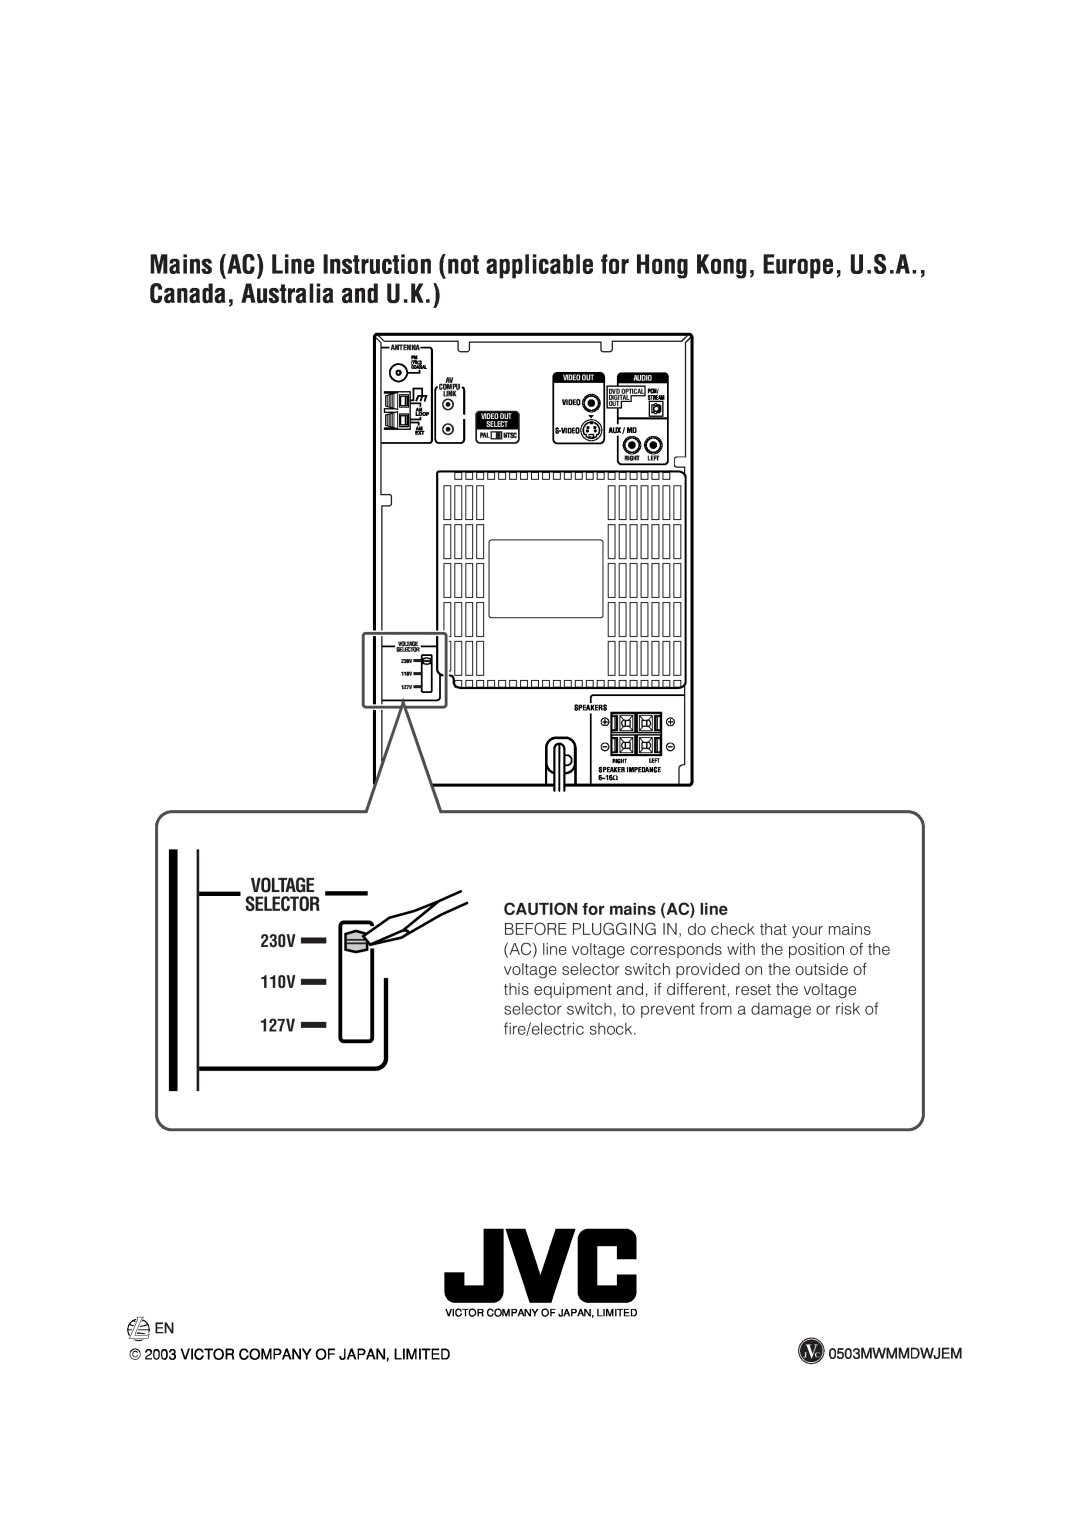 JVC SP-UXA7DVD, CA-UXA7DVD, UX-A7DVD manual Voltage, 127V, CAUTION for mains AC line, 230V, 110V 